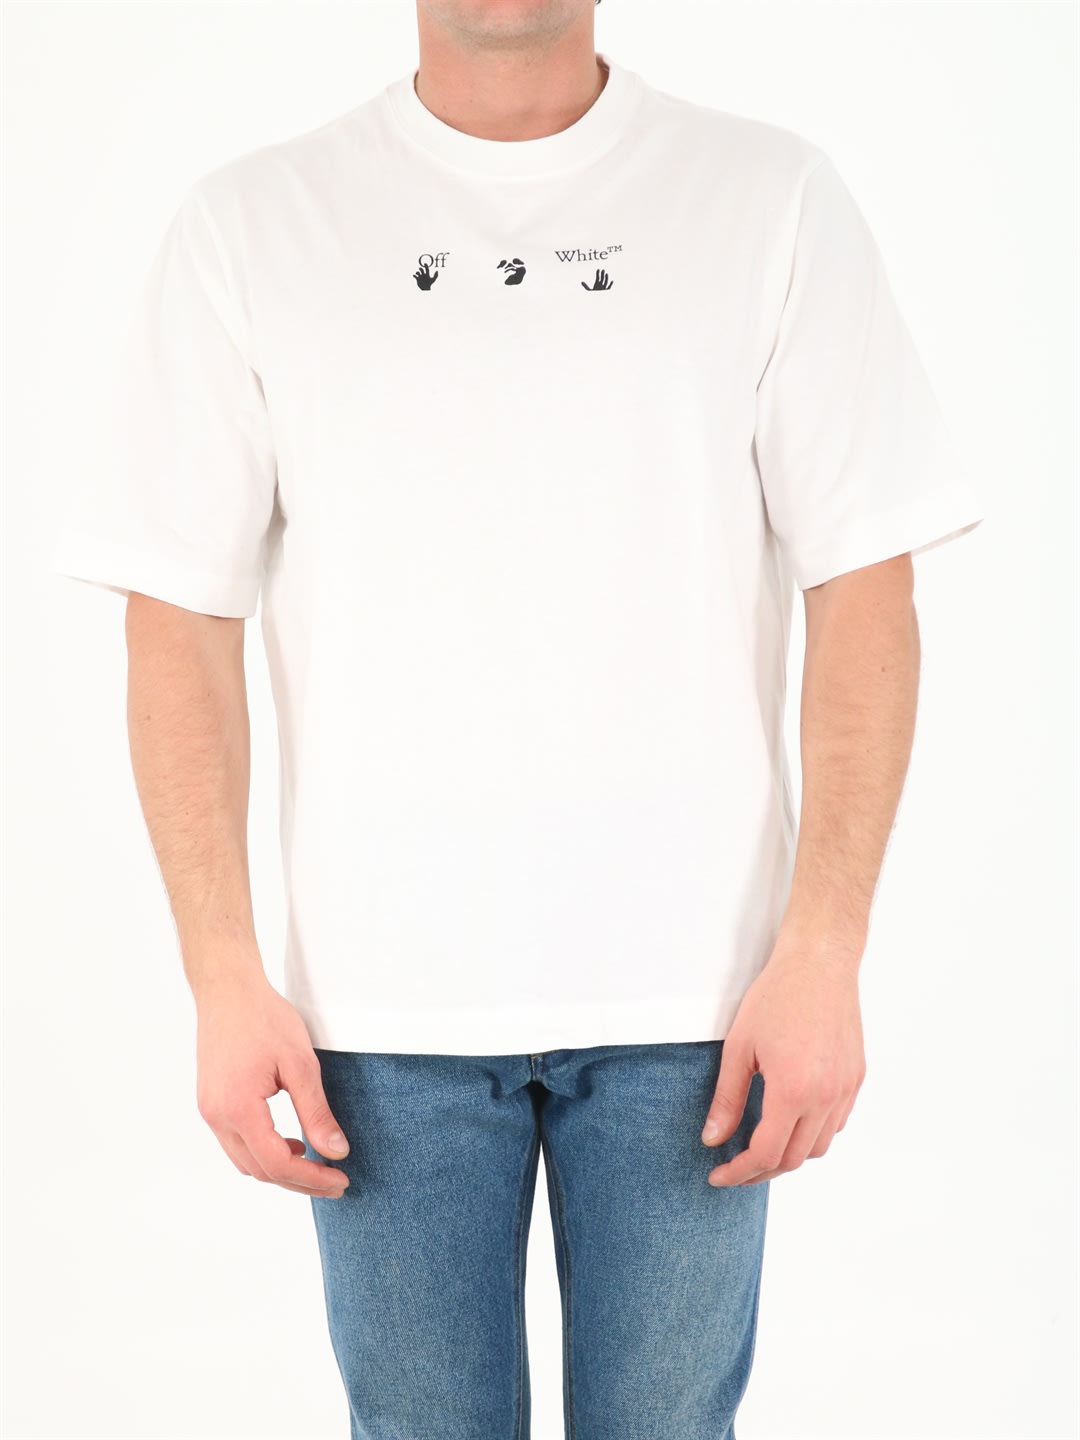 Off-White Arrows White T-shirt